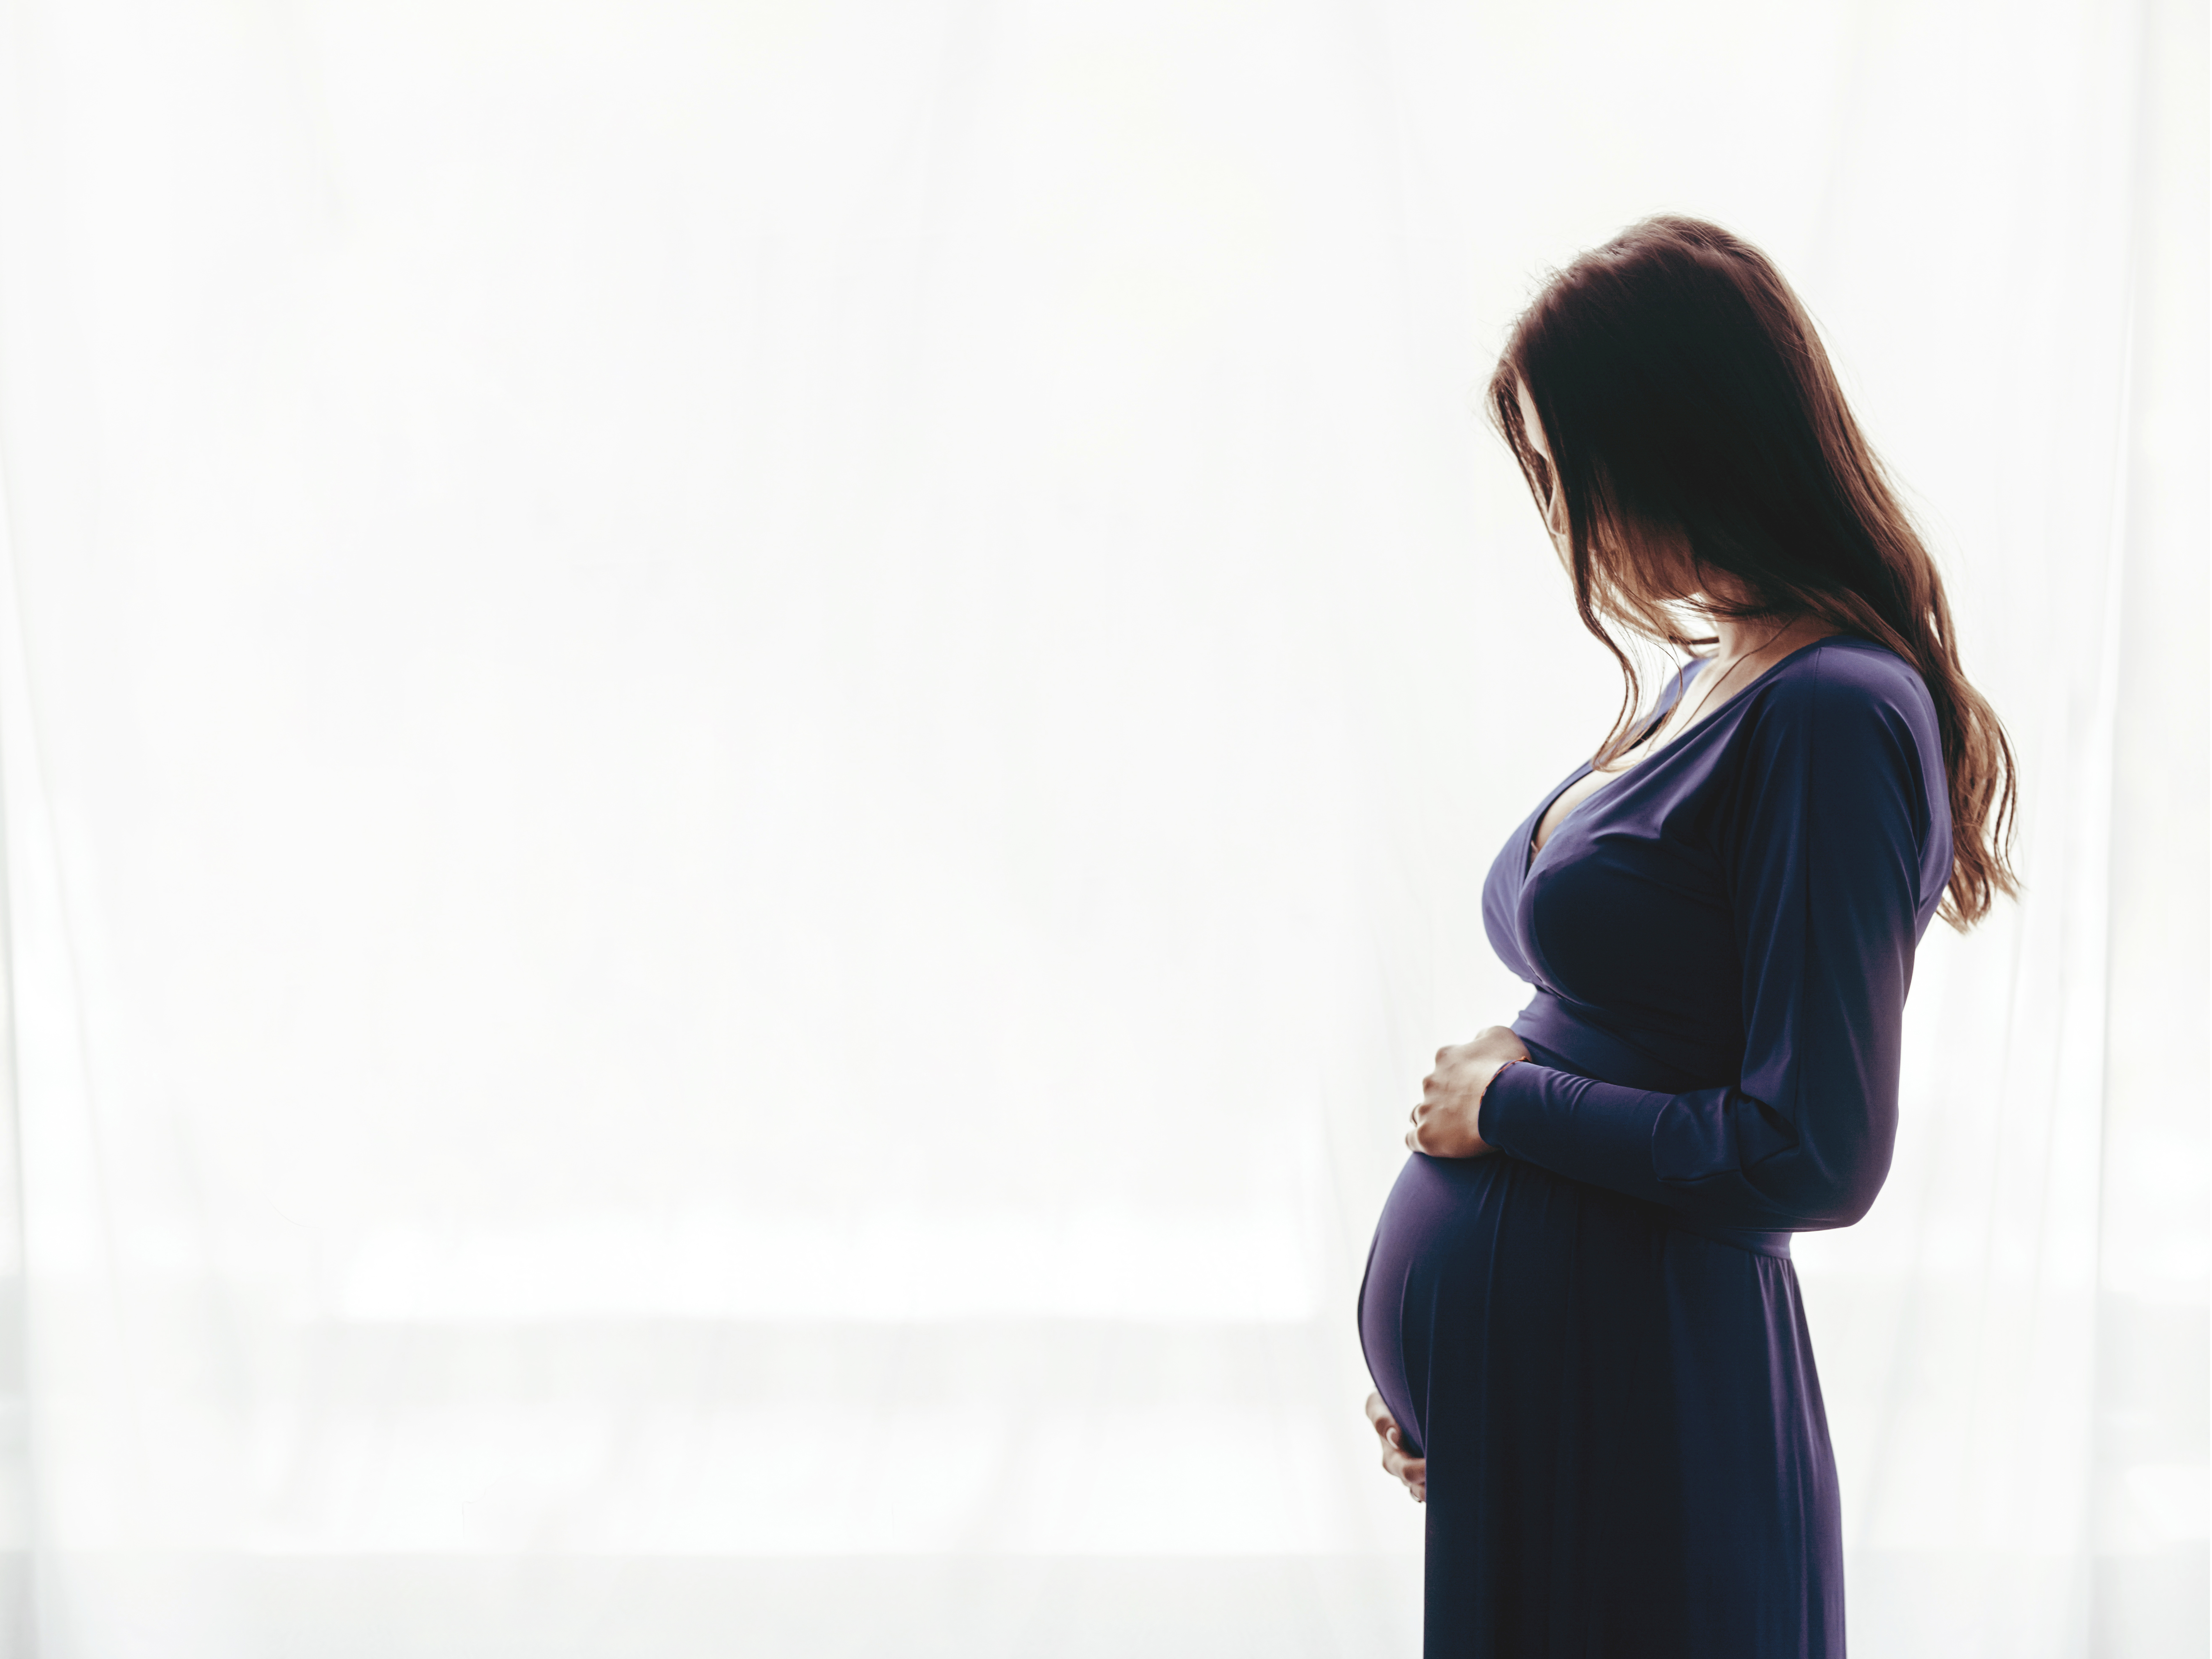 Une femme enceinte debout près d'une fenêtre | Source : Shutterstock